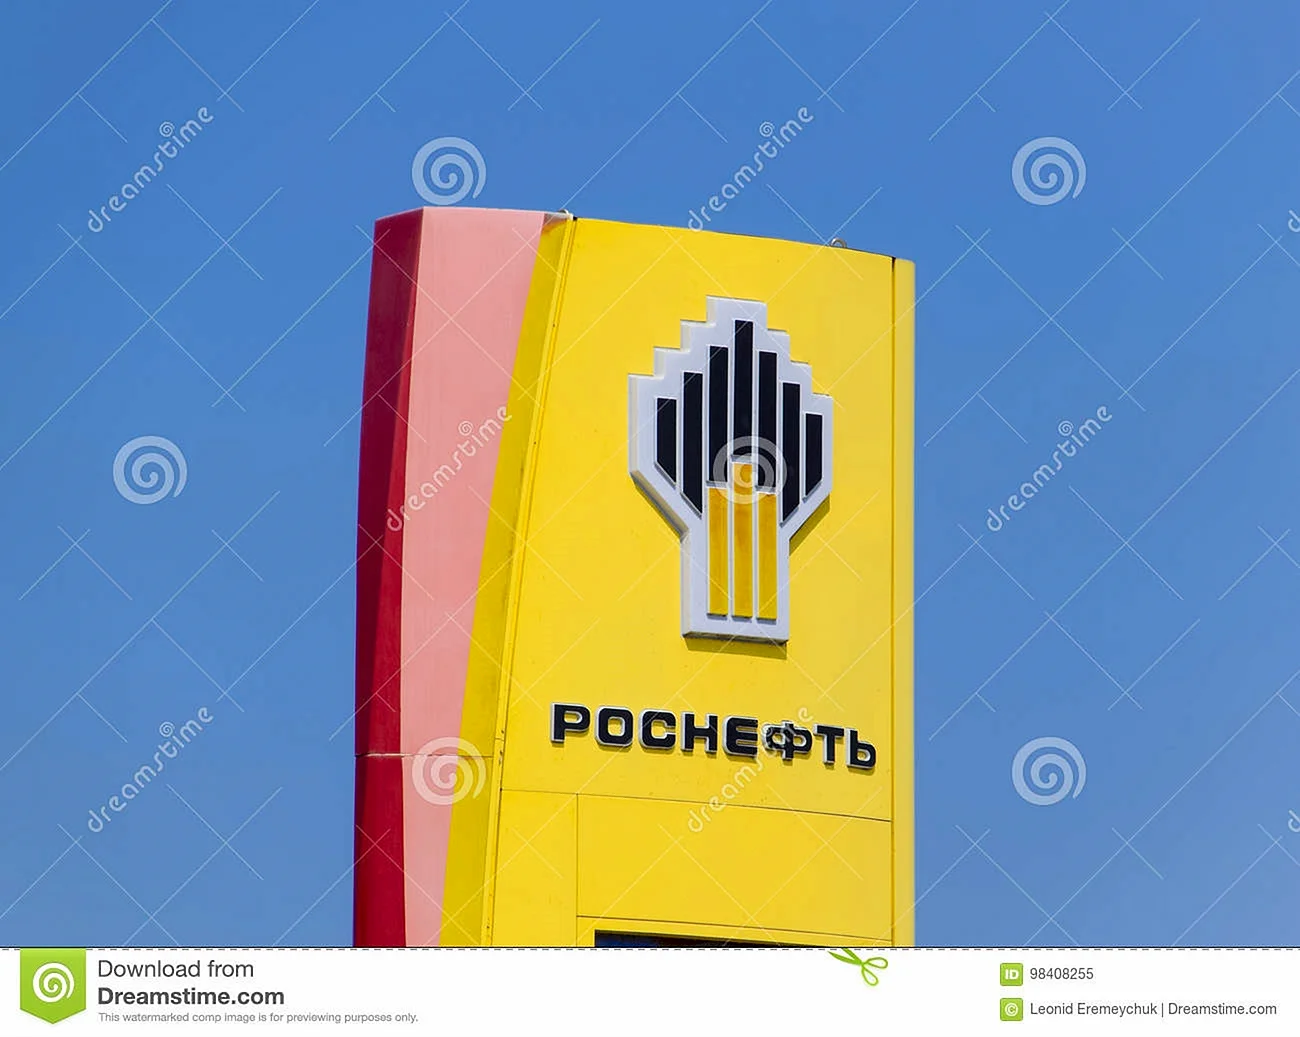 Логотип компании Роснефть